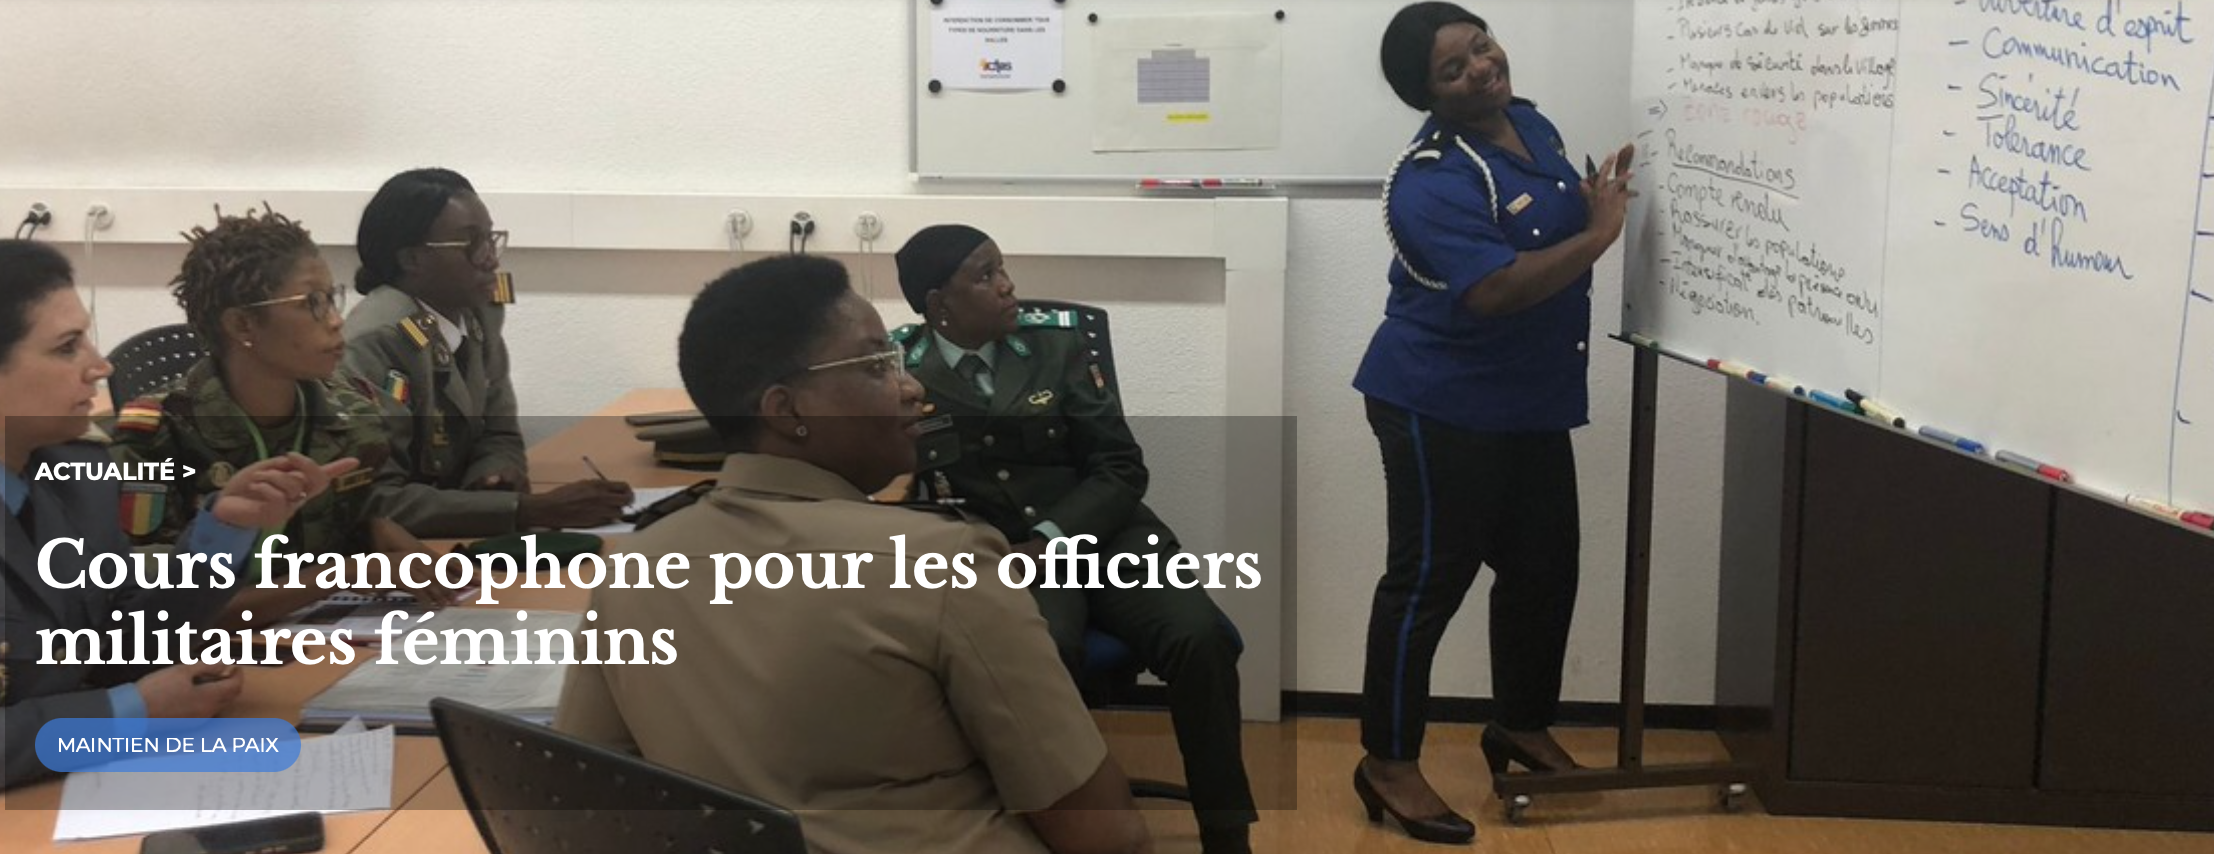 L’OIF accompagne le déploiement de cours francophone pour les officiers militaires féminins